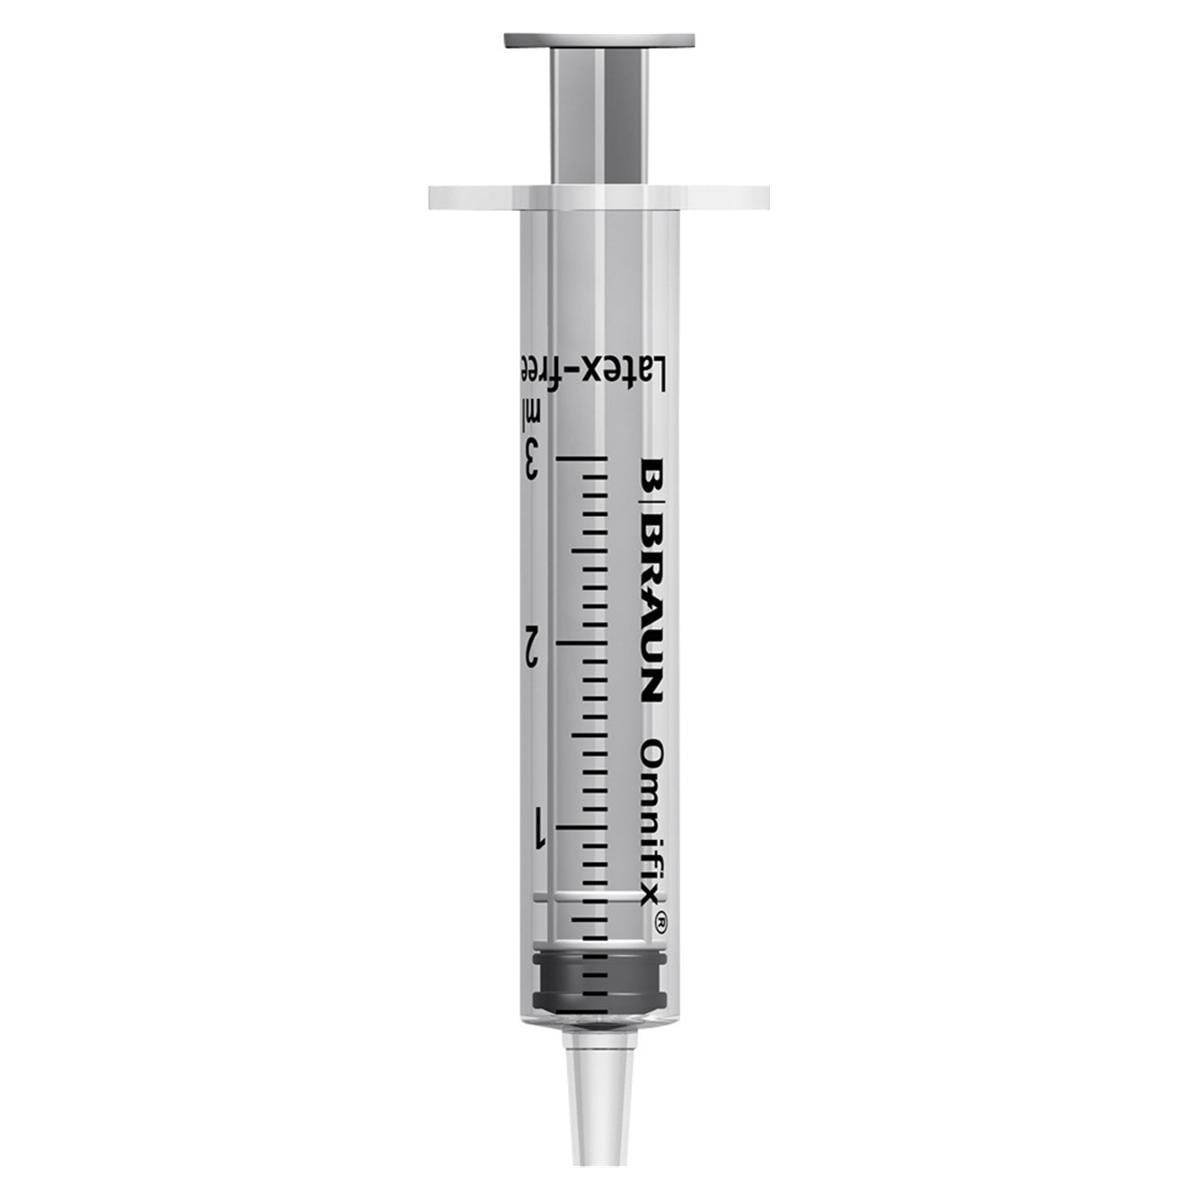 Injectiespuit 3-delig, luer - 3ml, per 100 stuks